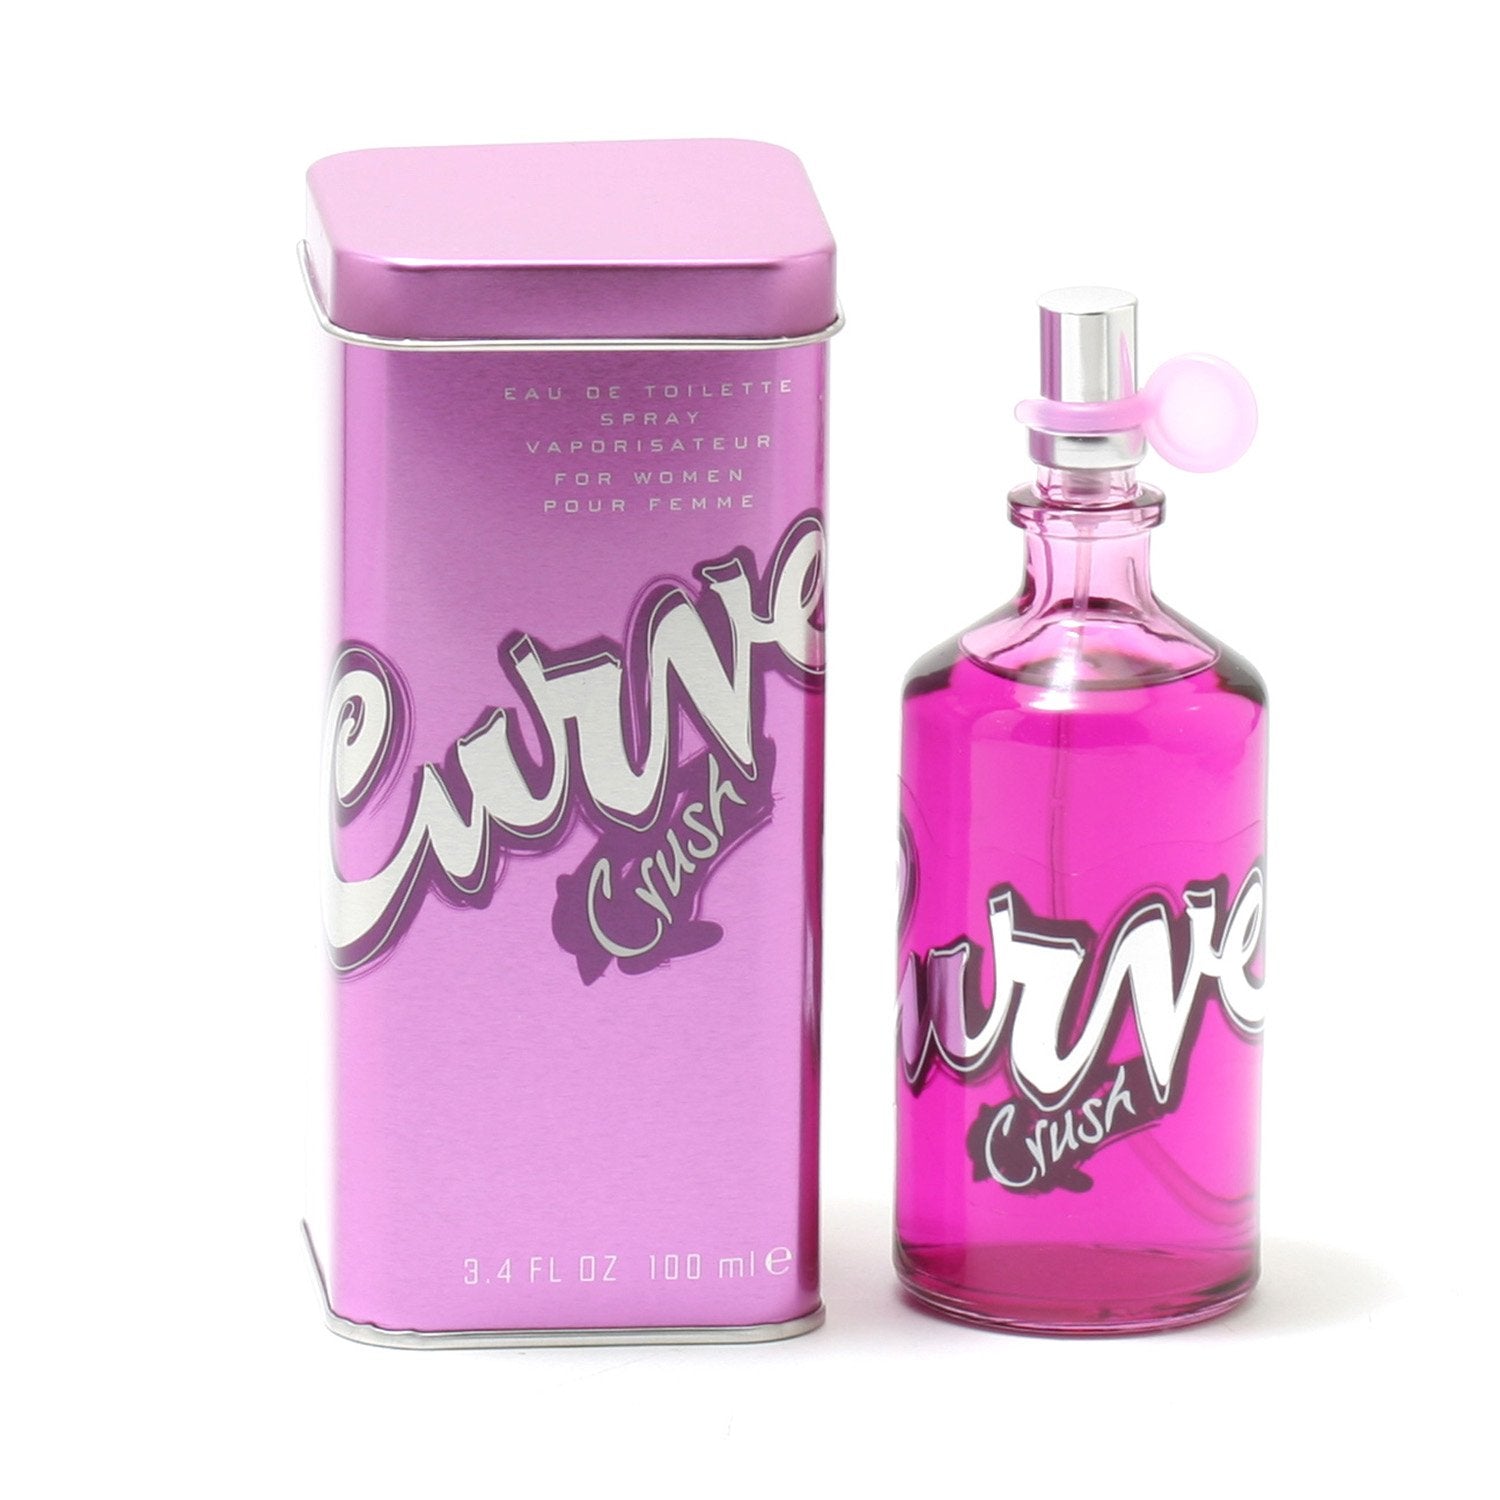 Perfume - CURVE CRUSH FOR WOMEN BY LIZ CLAIBORNE - EAU DE TOILETTE SPRAY, 3.4 OZ